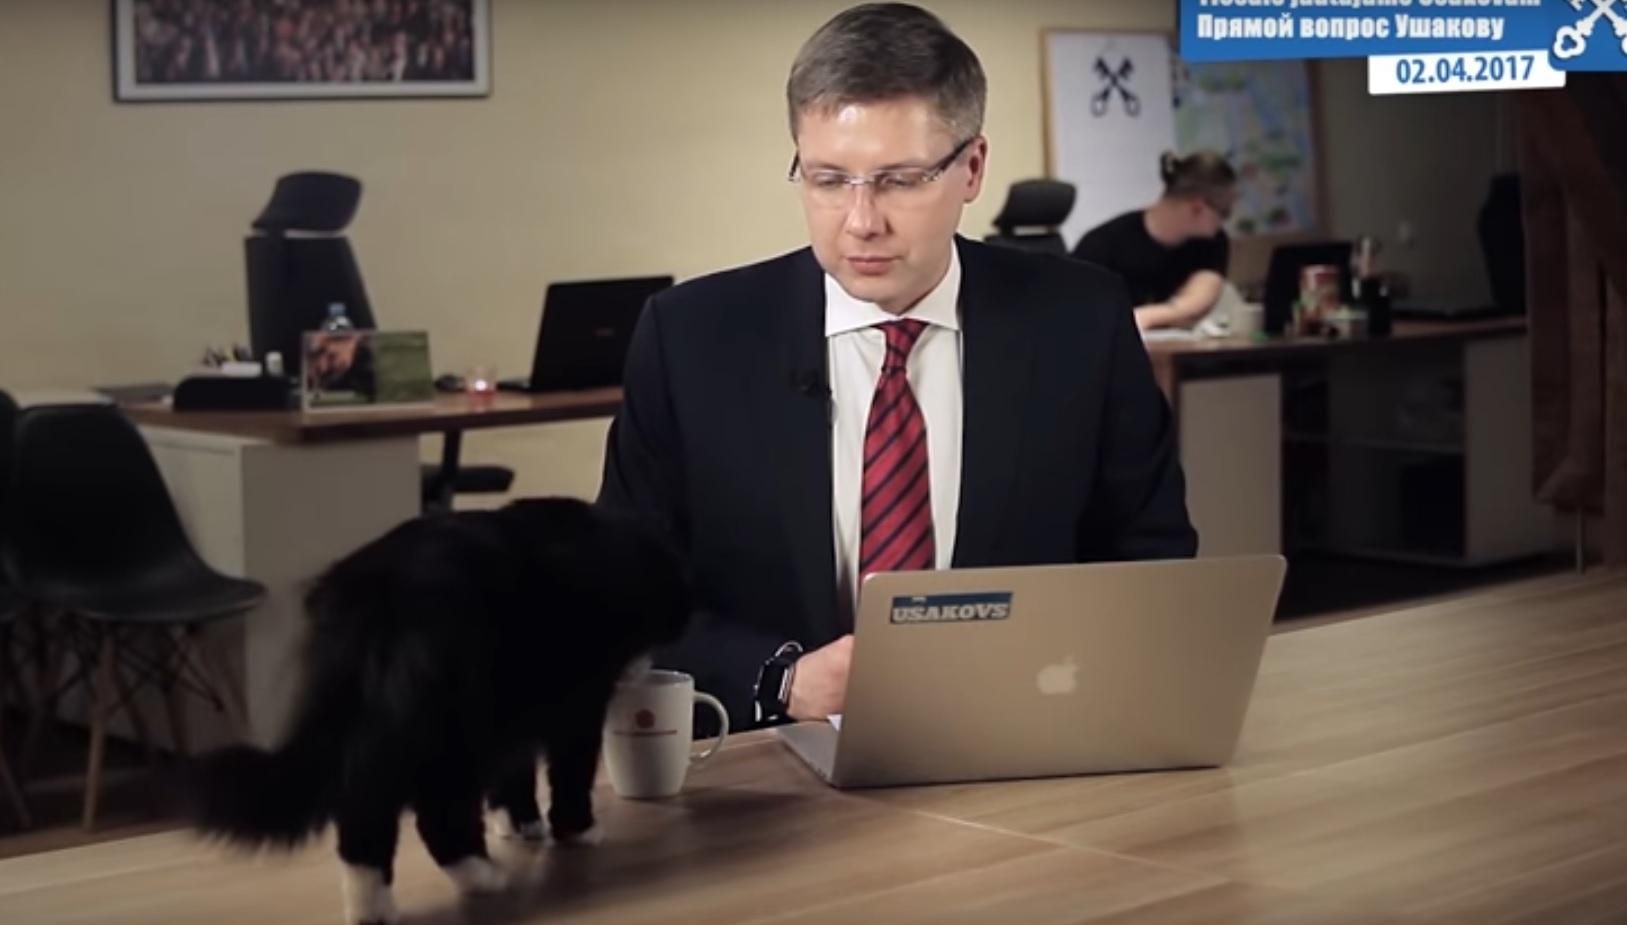 Кіт увірвався в кадр під час офіційного звернення політика: смішне відео